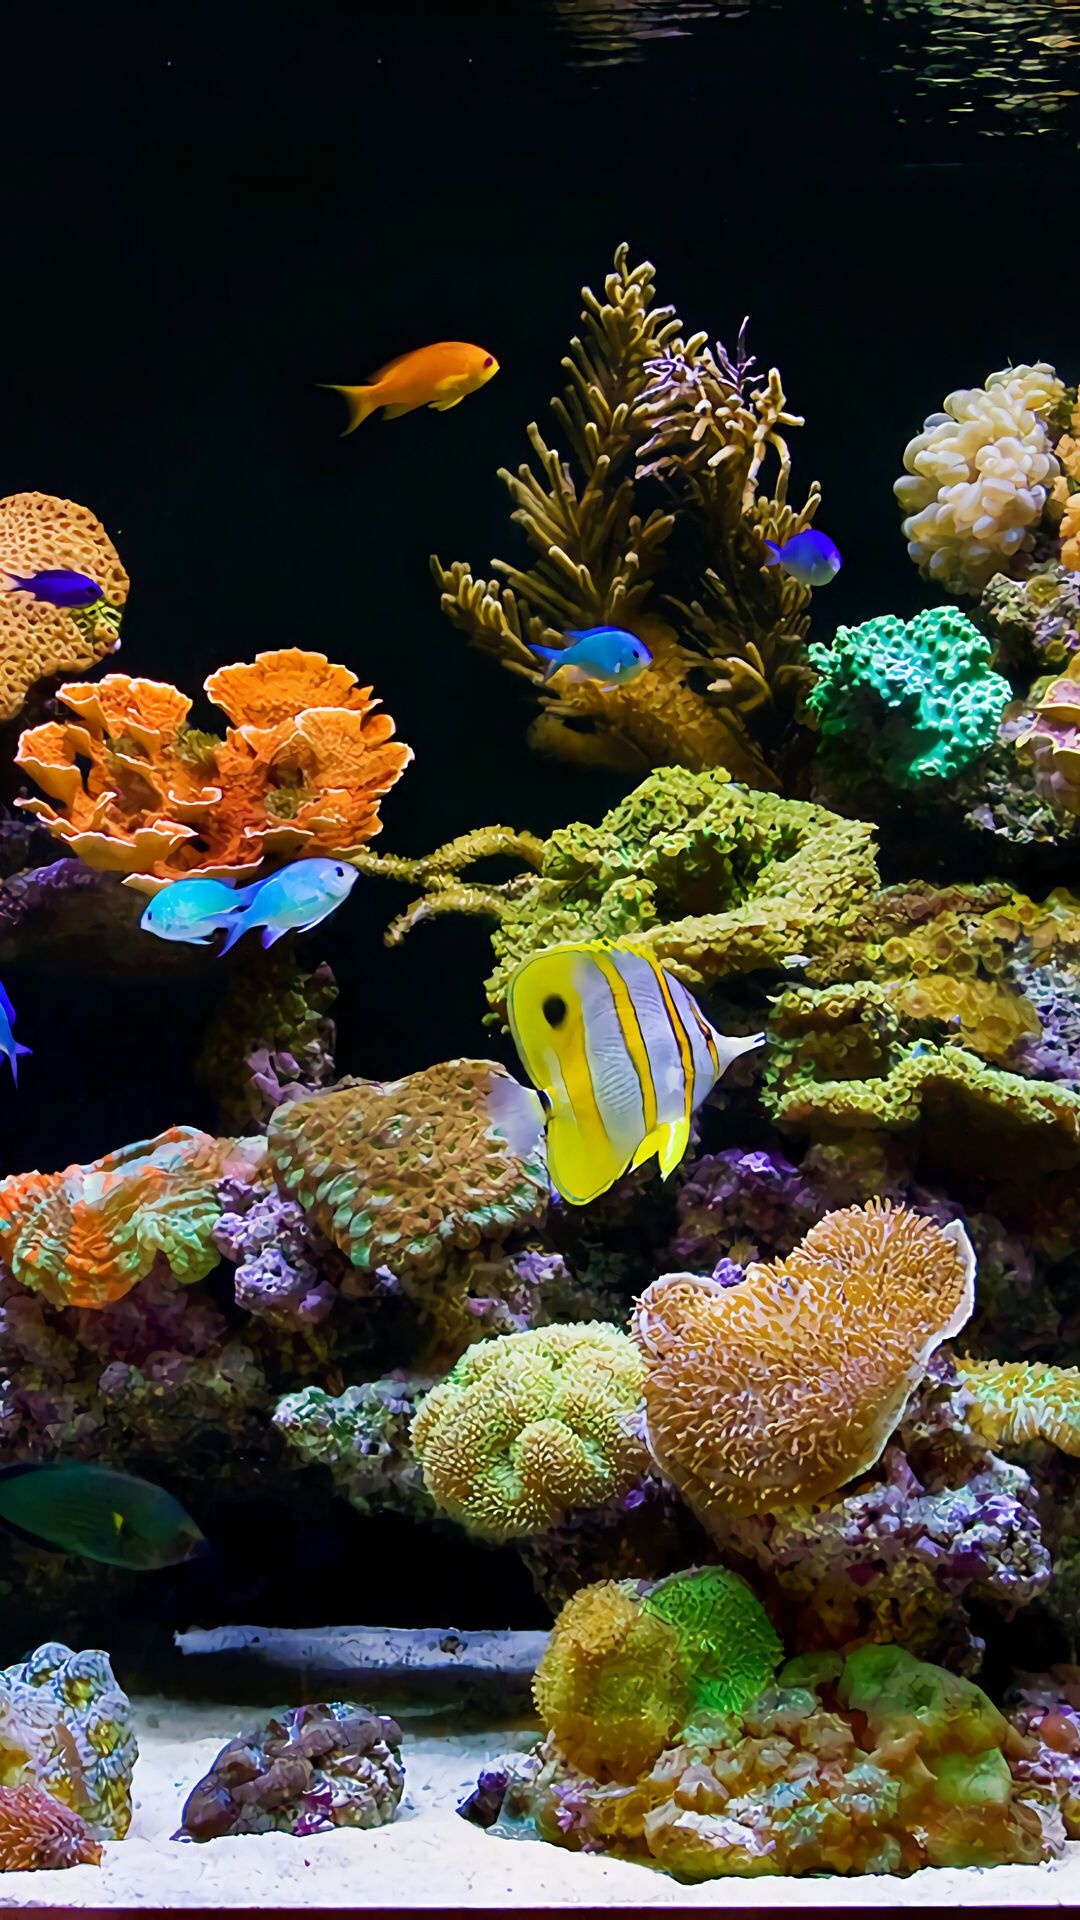 Aquarium, Virtual pin page, Aquatic inspiration, Share aquarium images, Captivating underwater scenes, 1080x1920 Full HD Phone